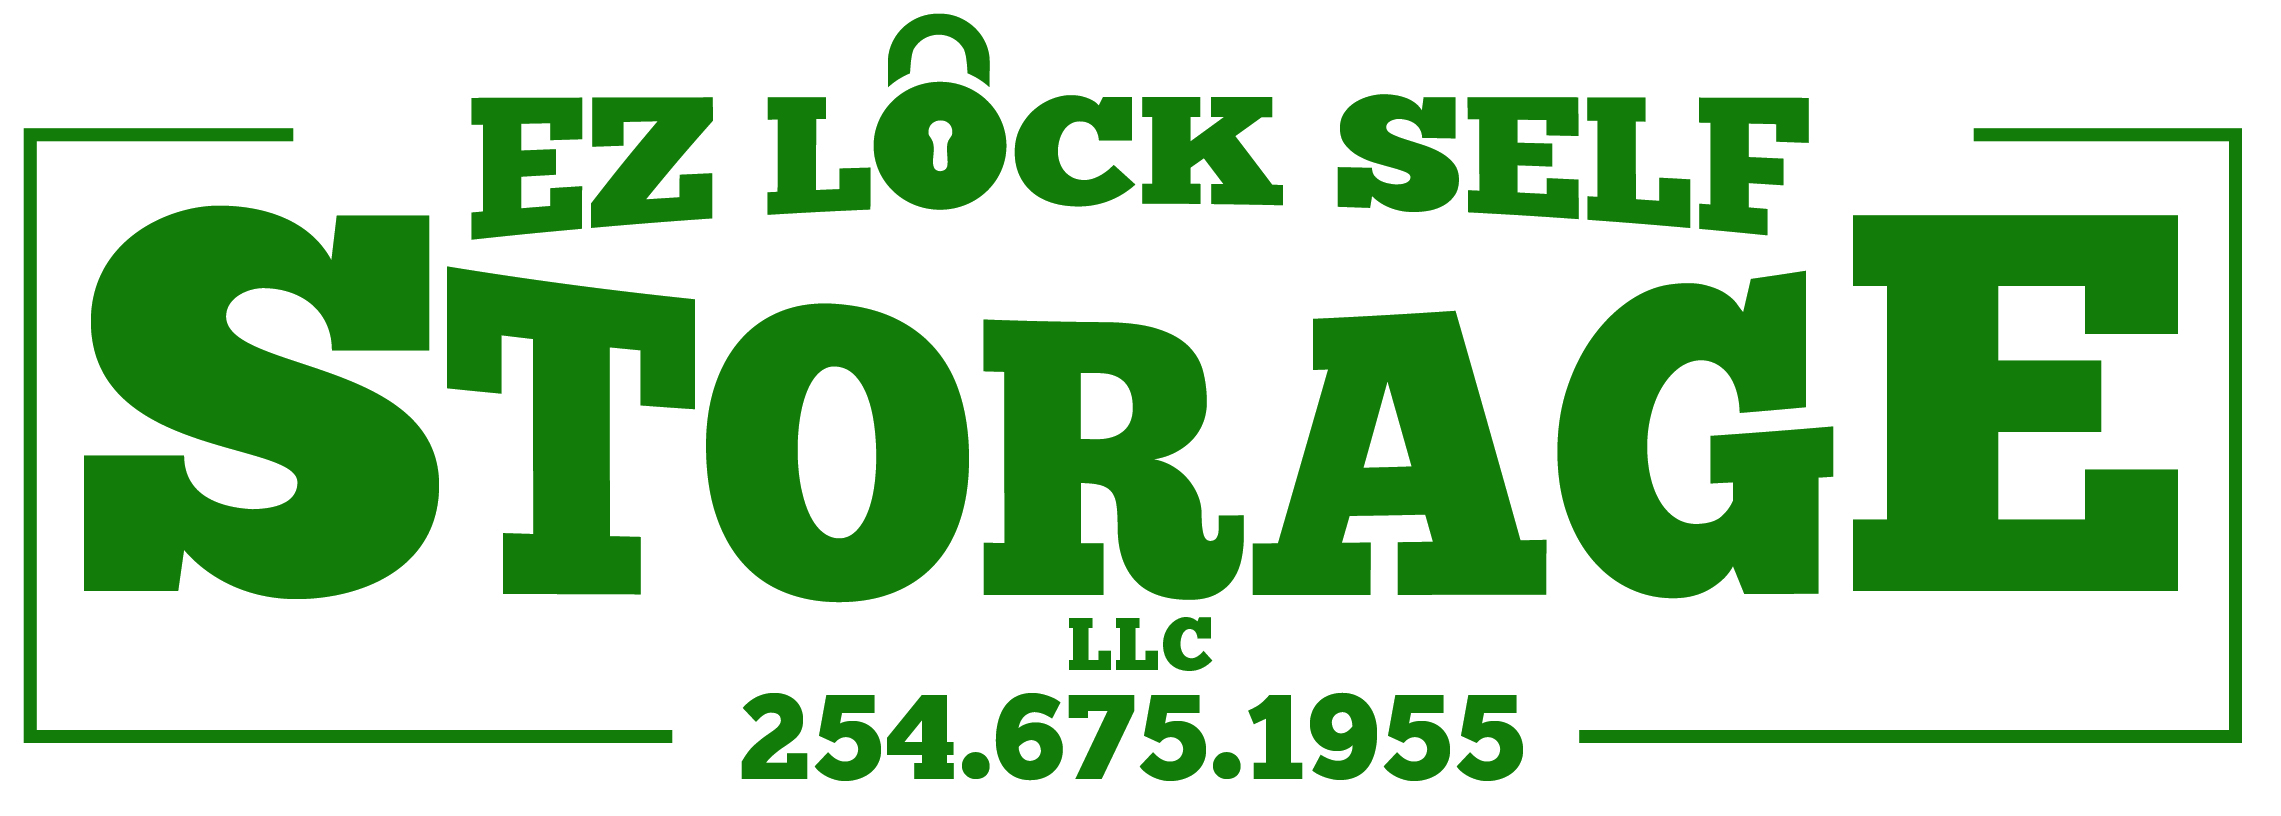 EZ Lock Self Storage, LLC  |   - EZ Lock Self Storage, LLC 